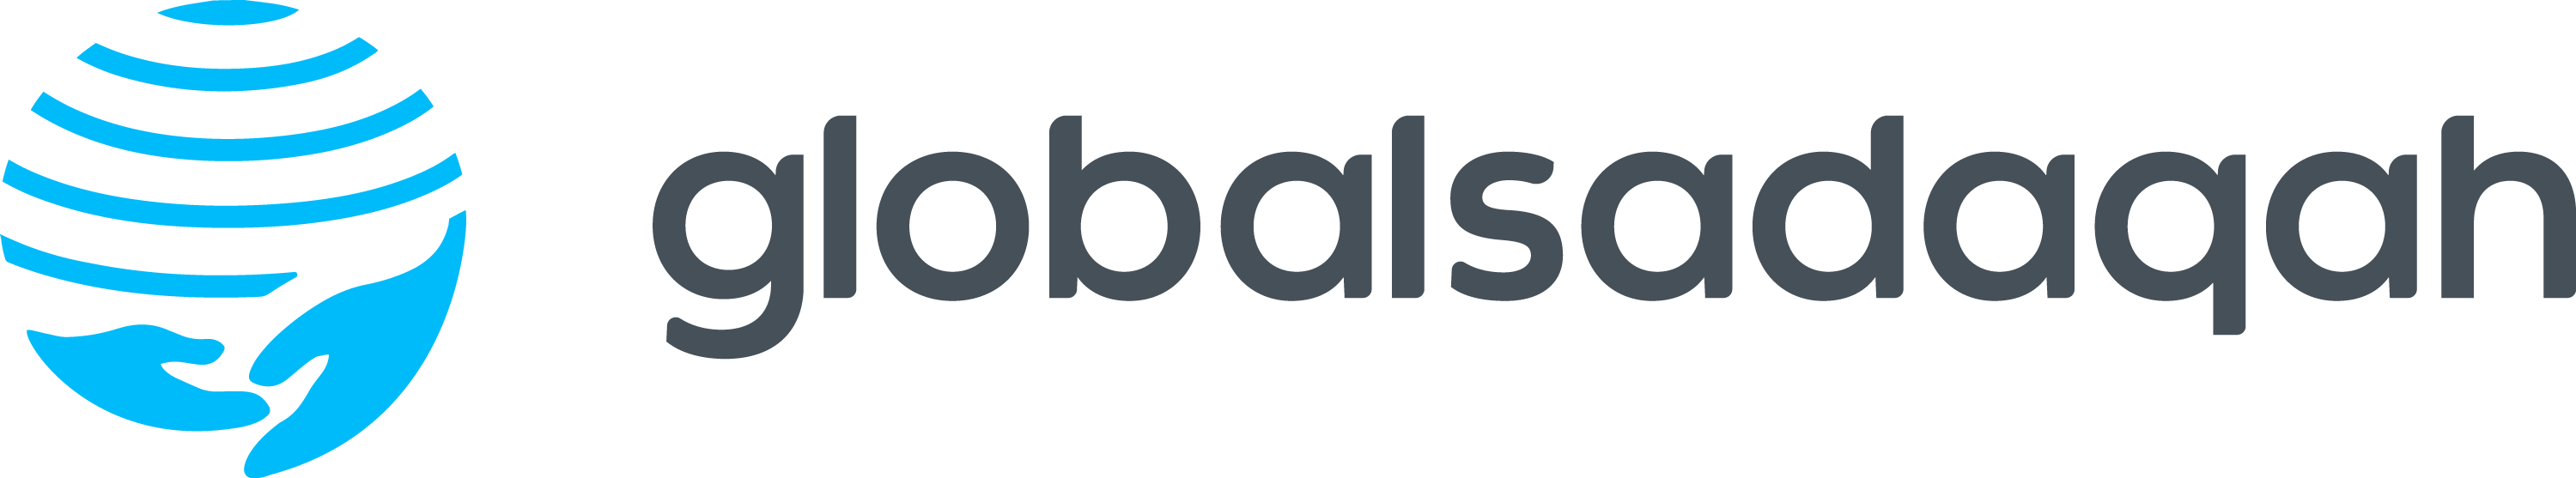 GlobalSadaqah logo